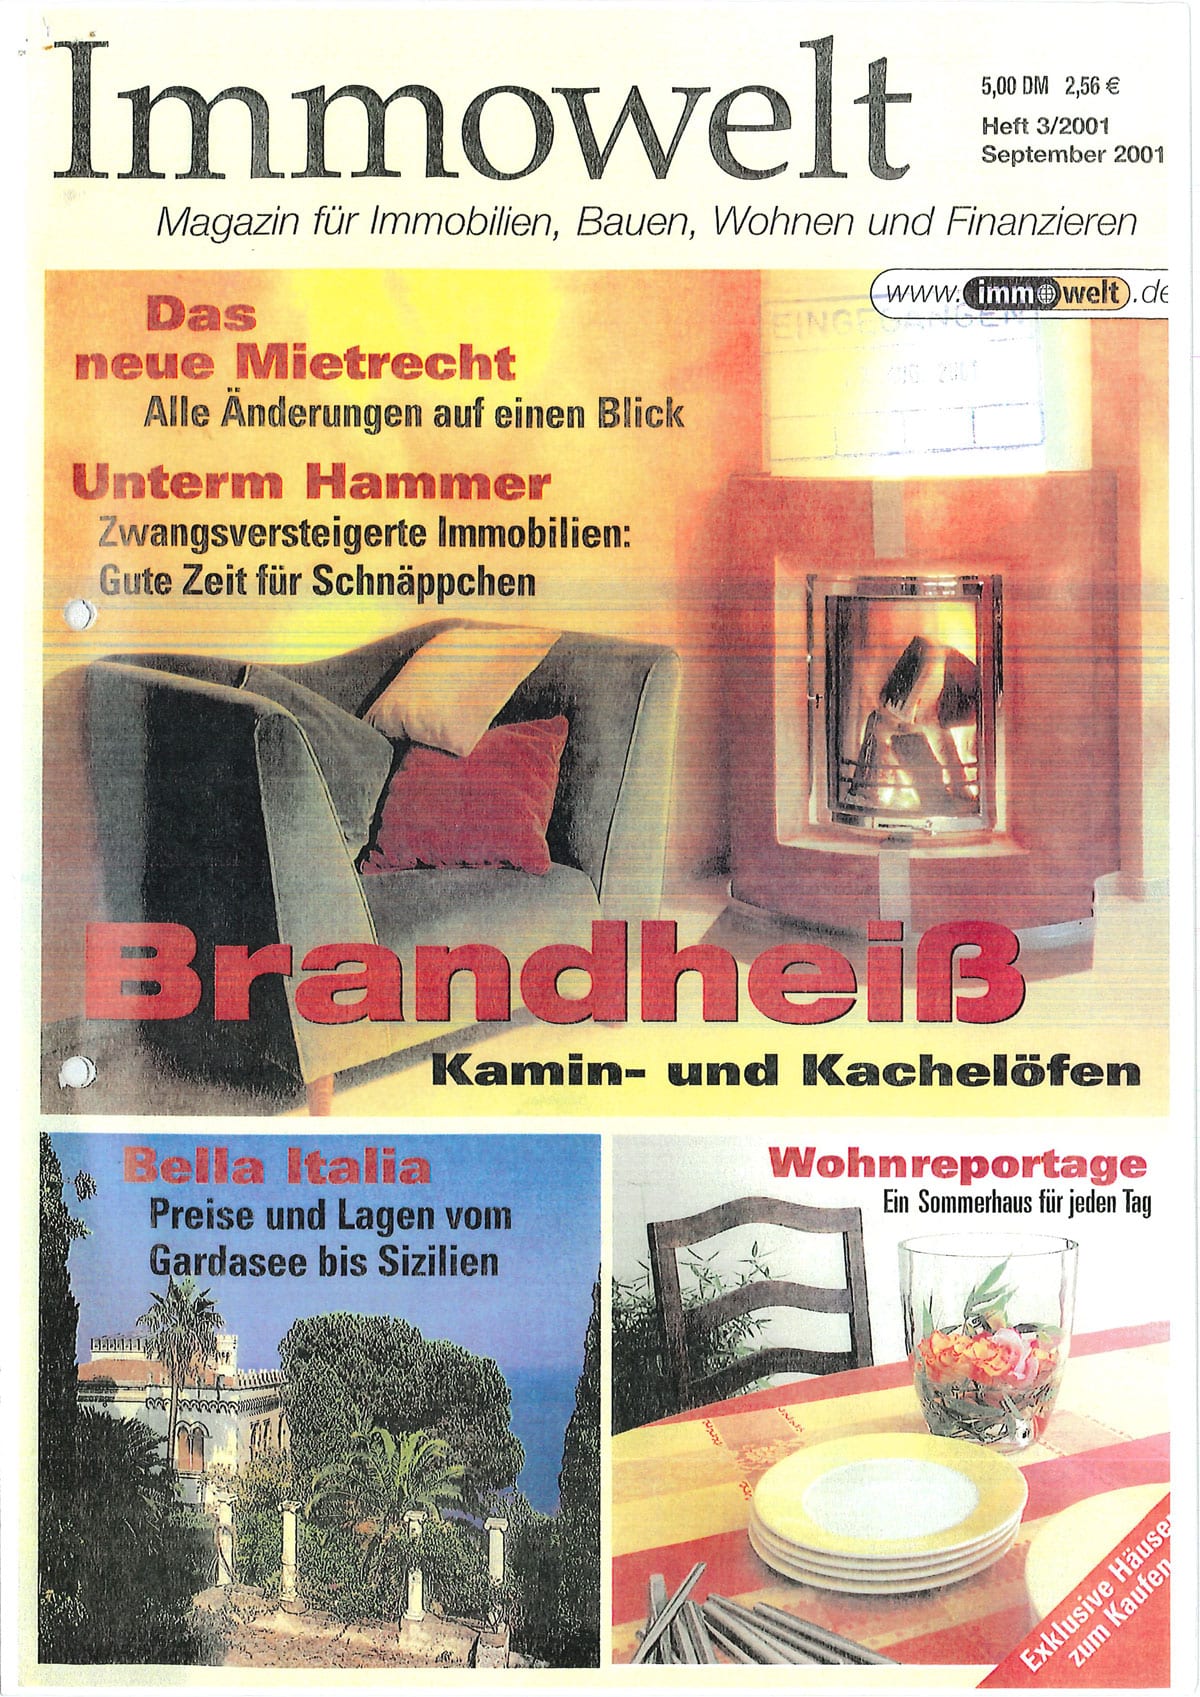 09.2001 - Immowelt Heft, Hausbau Nürnberg